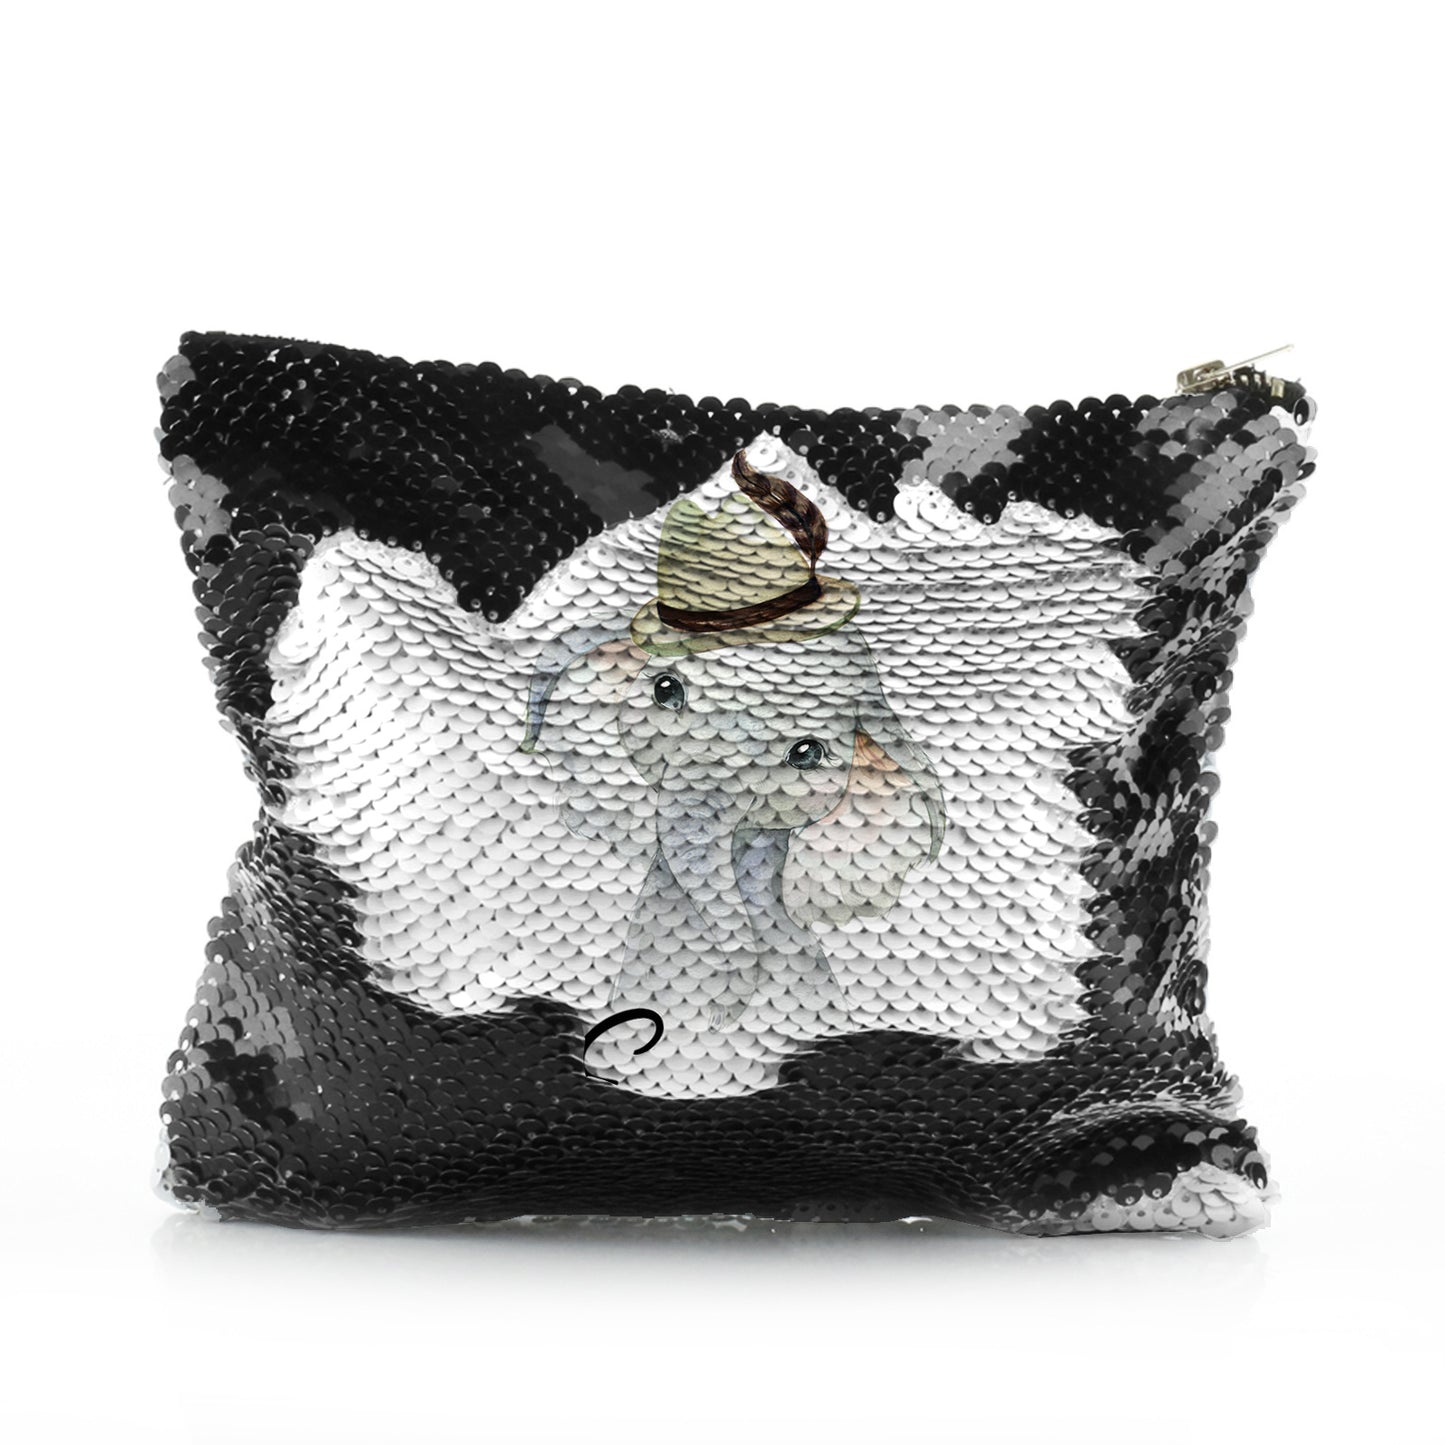 Personalisierte Pailletten-Reißverschlusstasche mit grauem Elefantenfederhut und süßem Text